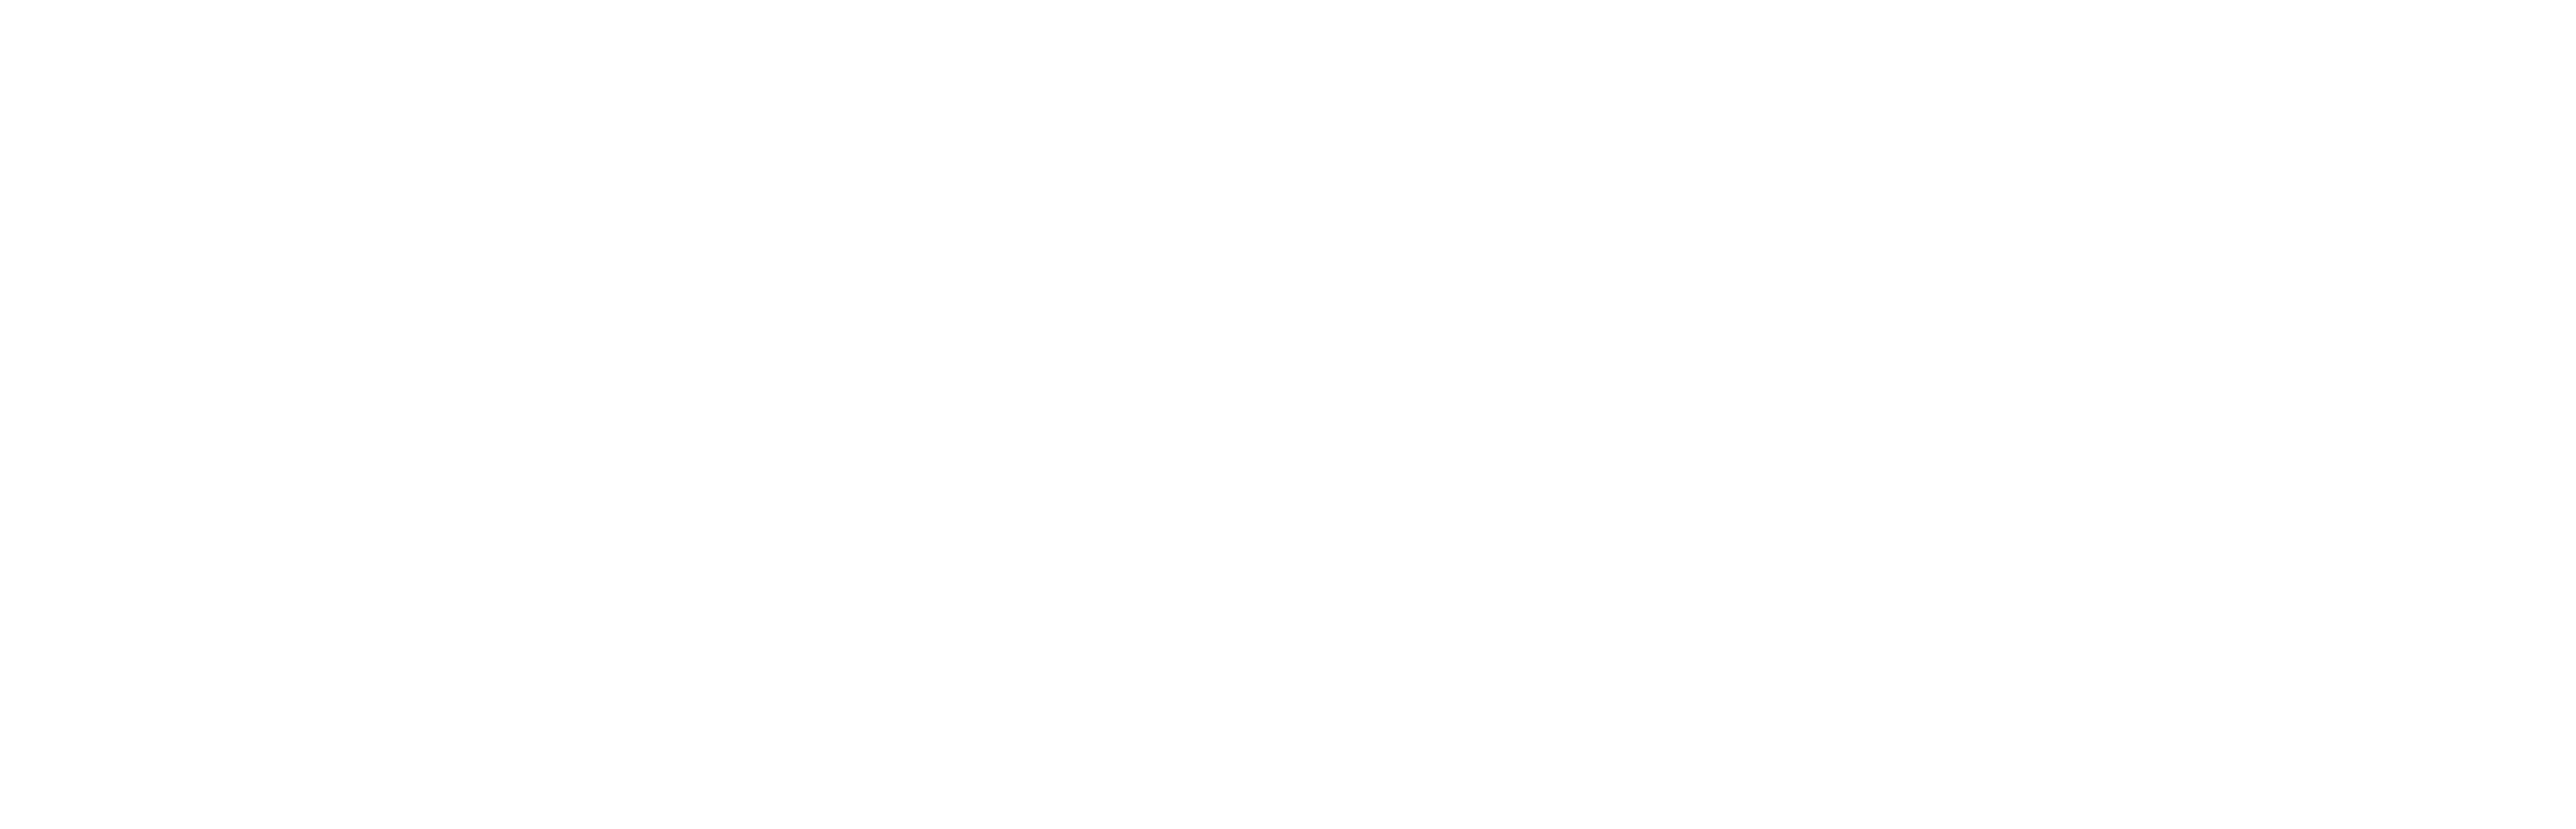 Tourist Trap logo